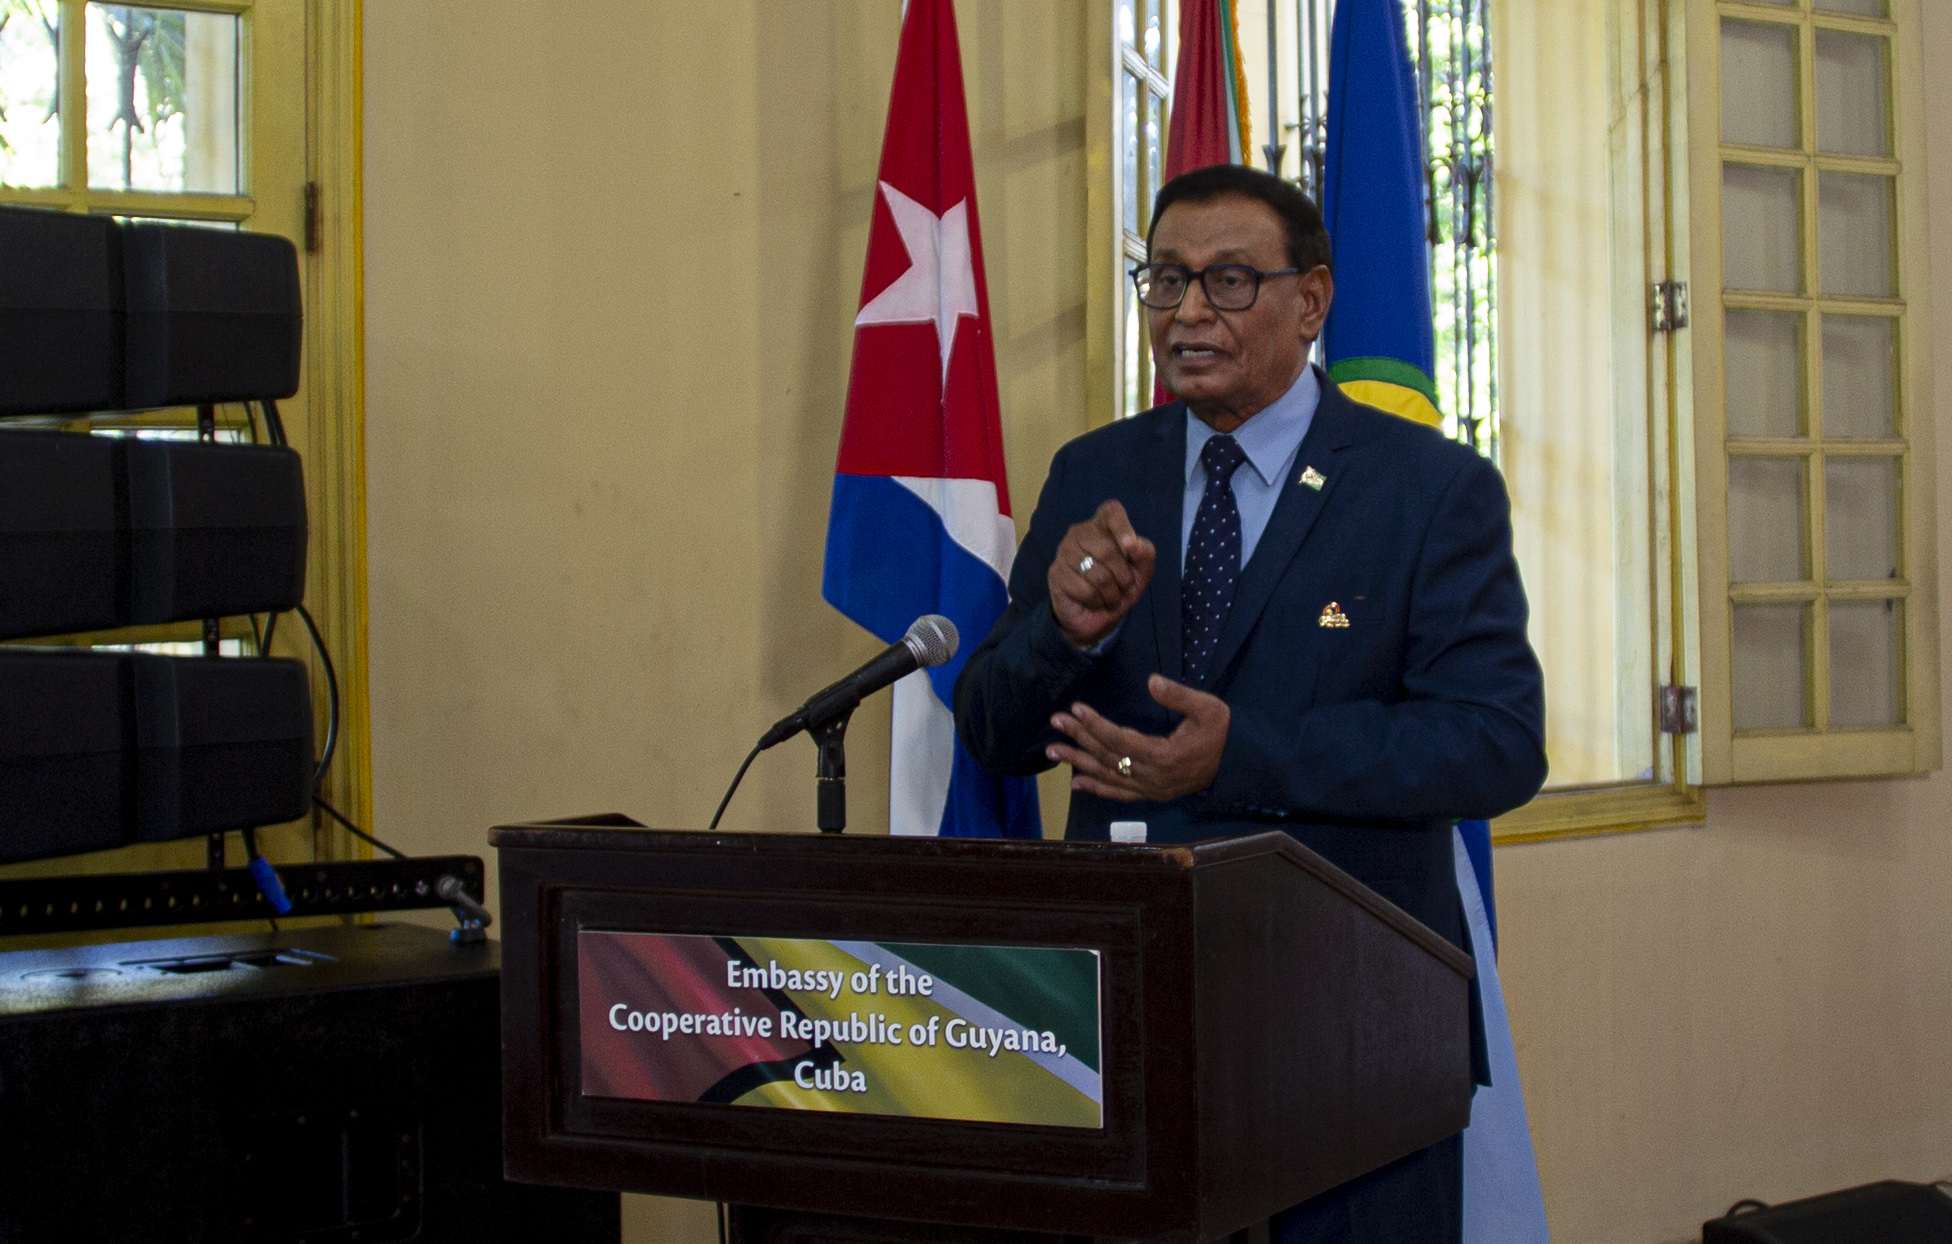 Desde el 2016, cuando lleg a Cuba como embajador de la Repblica Cooperativa de Guyana, el Excelentsimo Halim Majeed auspicia una ceremonia de recordacin a las vctimas del Crimen de Barbados, donde perdi la vida su cuado Sasenarine Kumar. Foto: Ismael Francisco/ Cubadebate.